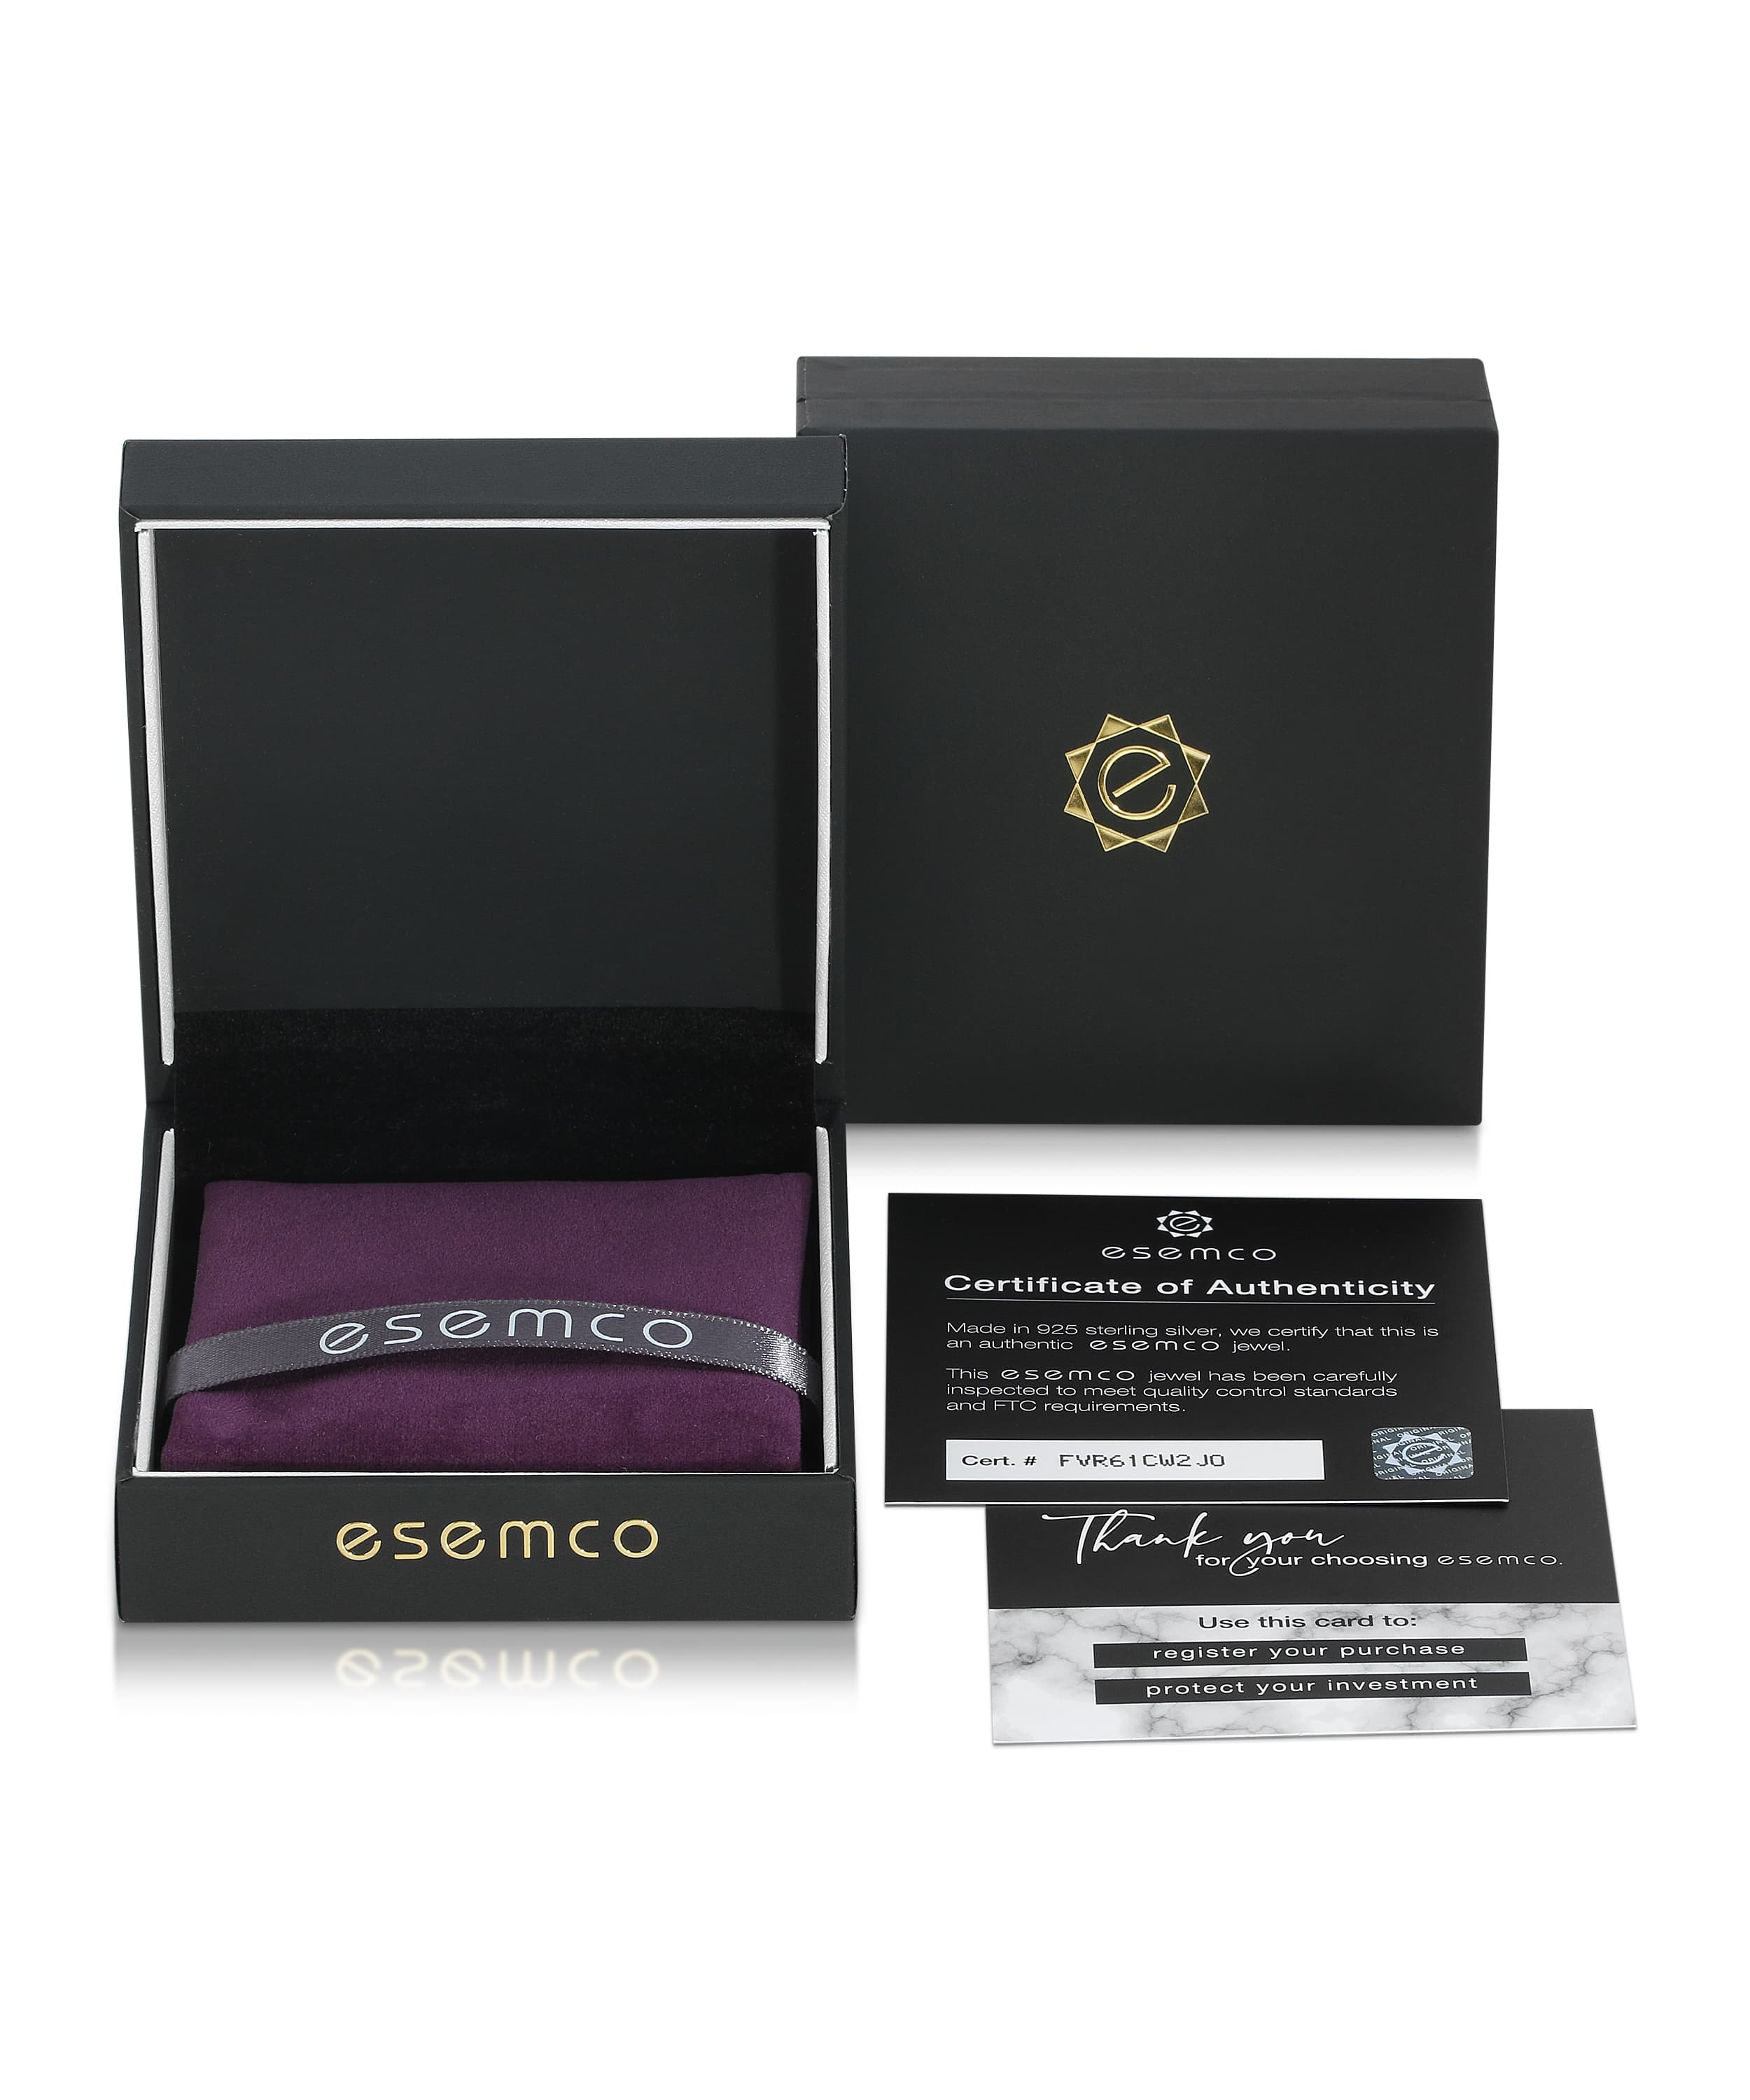 ESEMCO Diamond 18k White Gold Letter L Initial Open Ring View 4